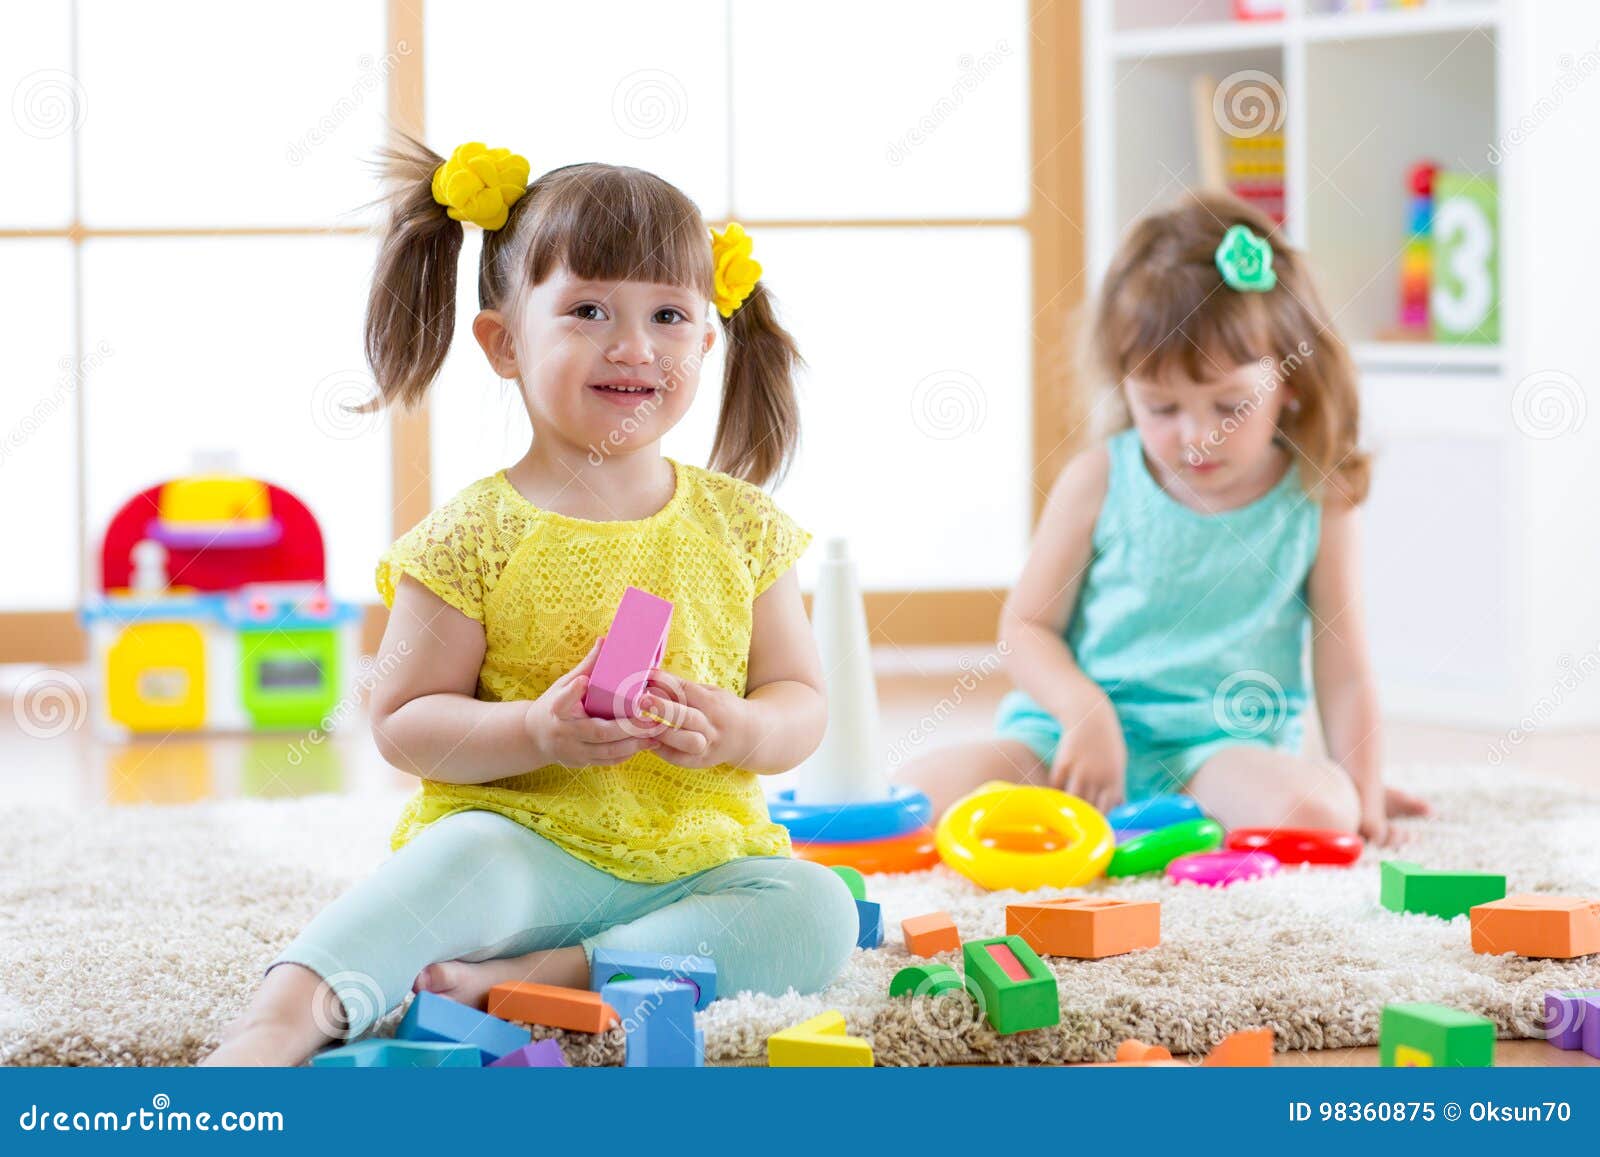 Criança brincar brinquedo infância criança jogo divertido pessoa bebê bloco  menino bonito educação pré-escolar l